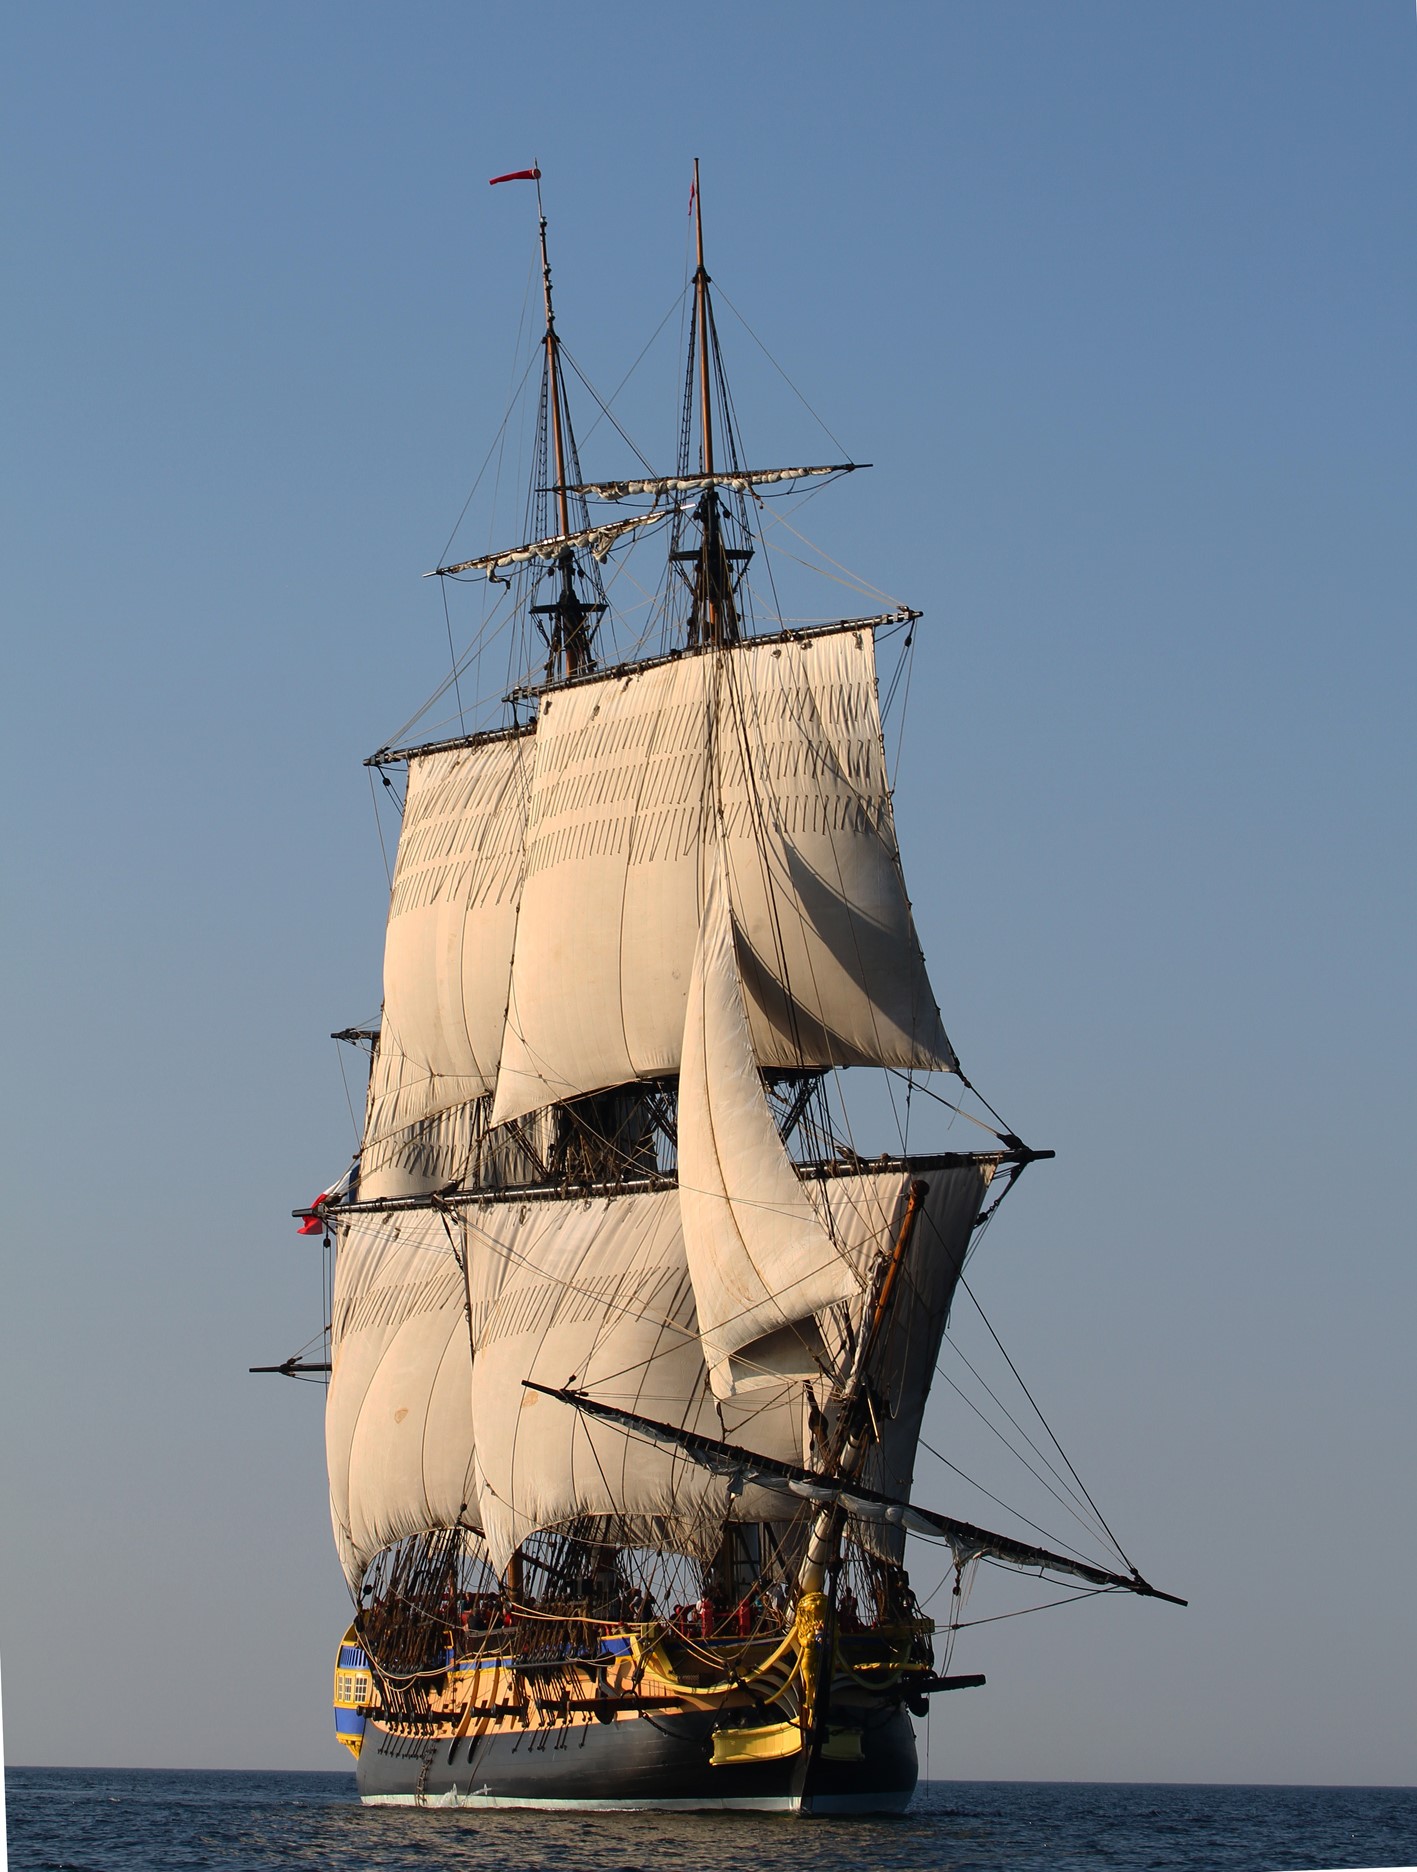 Фрегат 18. Парусный корабль 17 века Фрегат. Парусный корабль 17 века шхуна. Фрегат Hermione. Фрегат военный корабль 17 века.